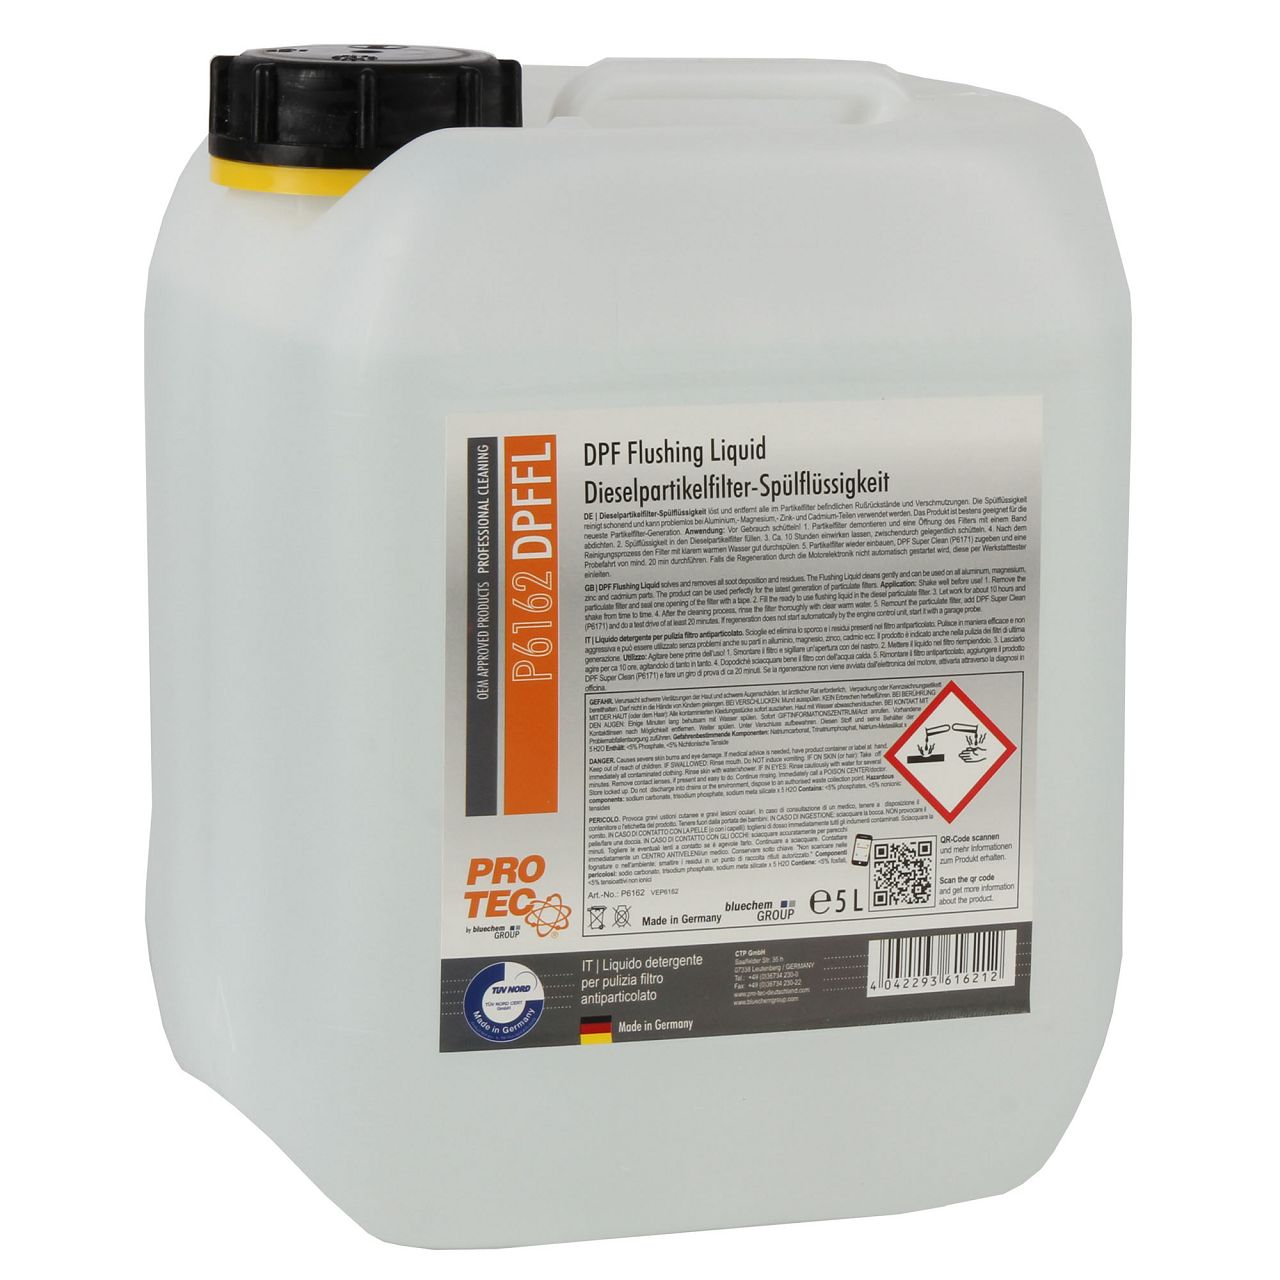 2x 5L PROTEC DPF Flushing Liquid Dieselpartikelfilter-Spülflüssigkeit Reiniger